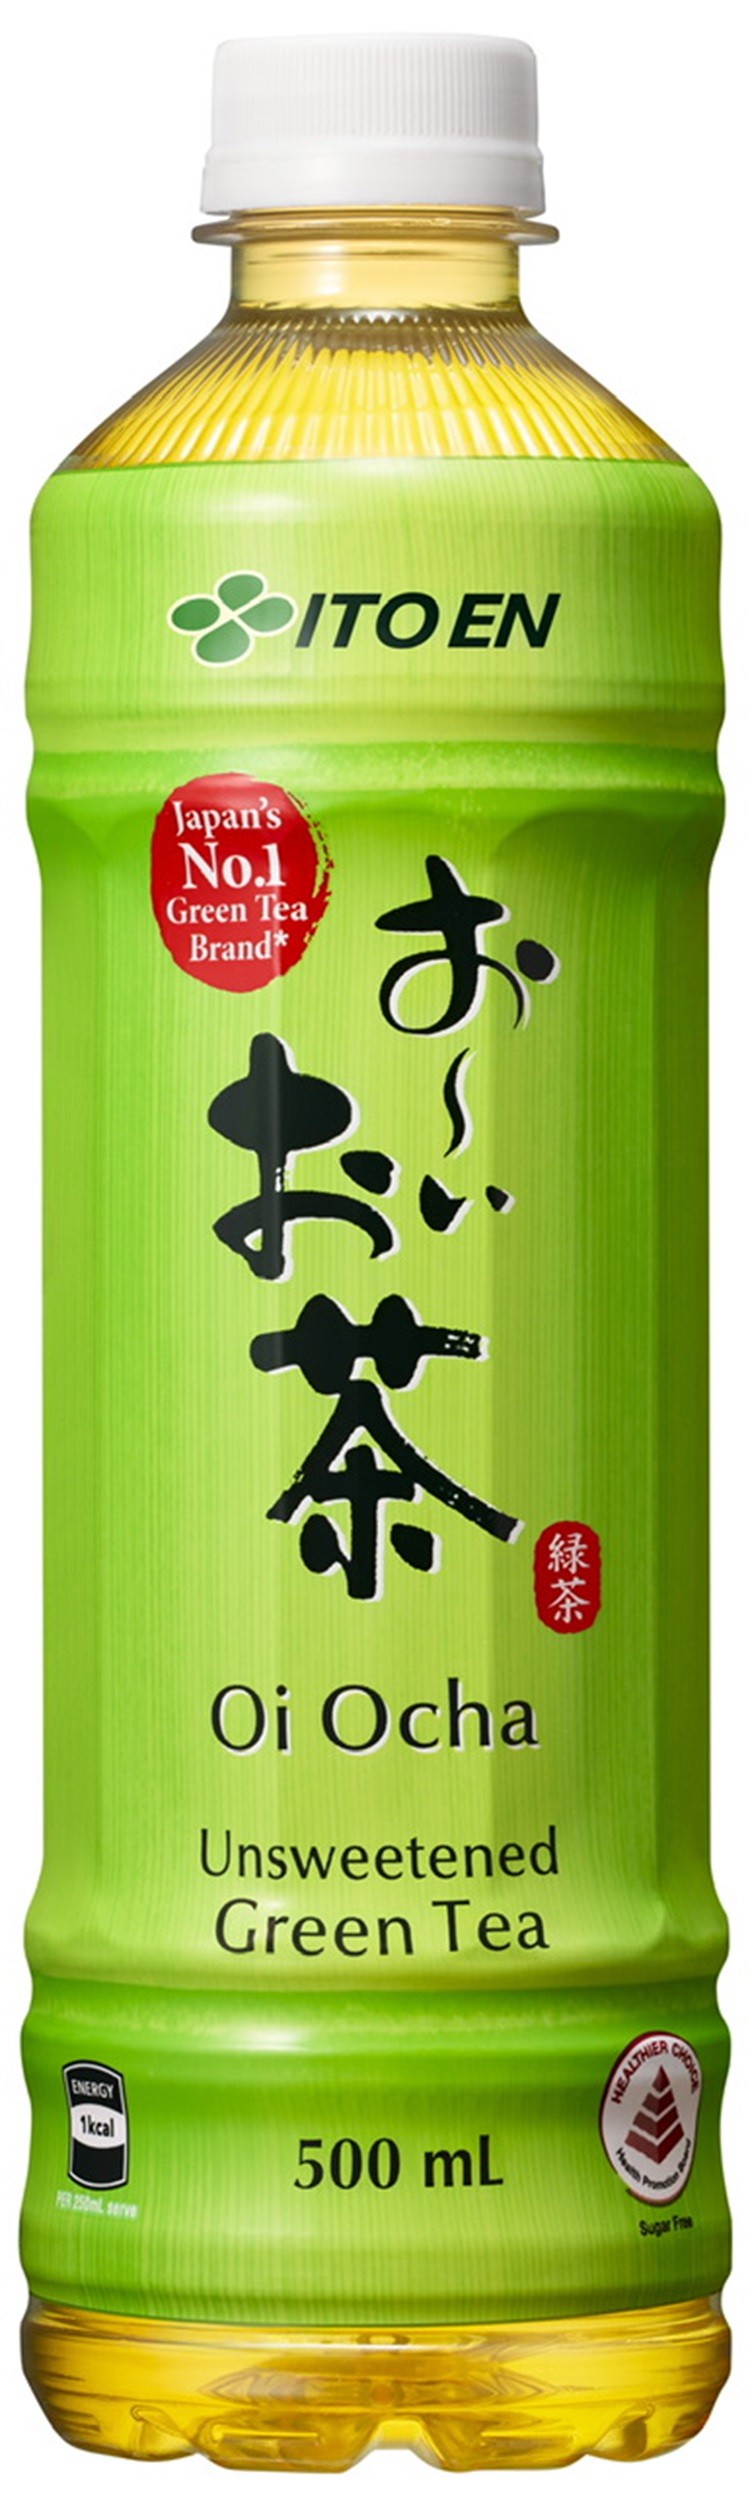 ITO EN nâng tầm giá trị trà Nhật Bản trên thị trường thế giới